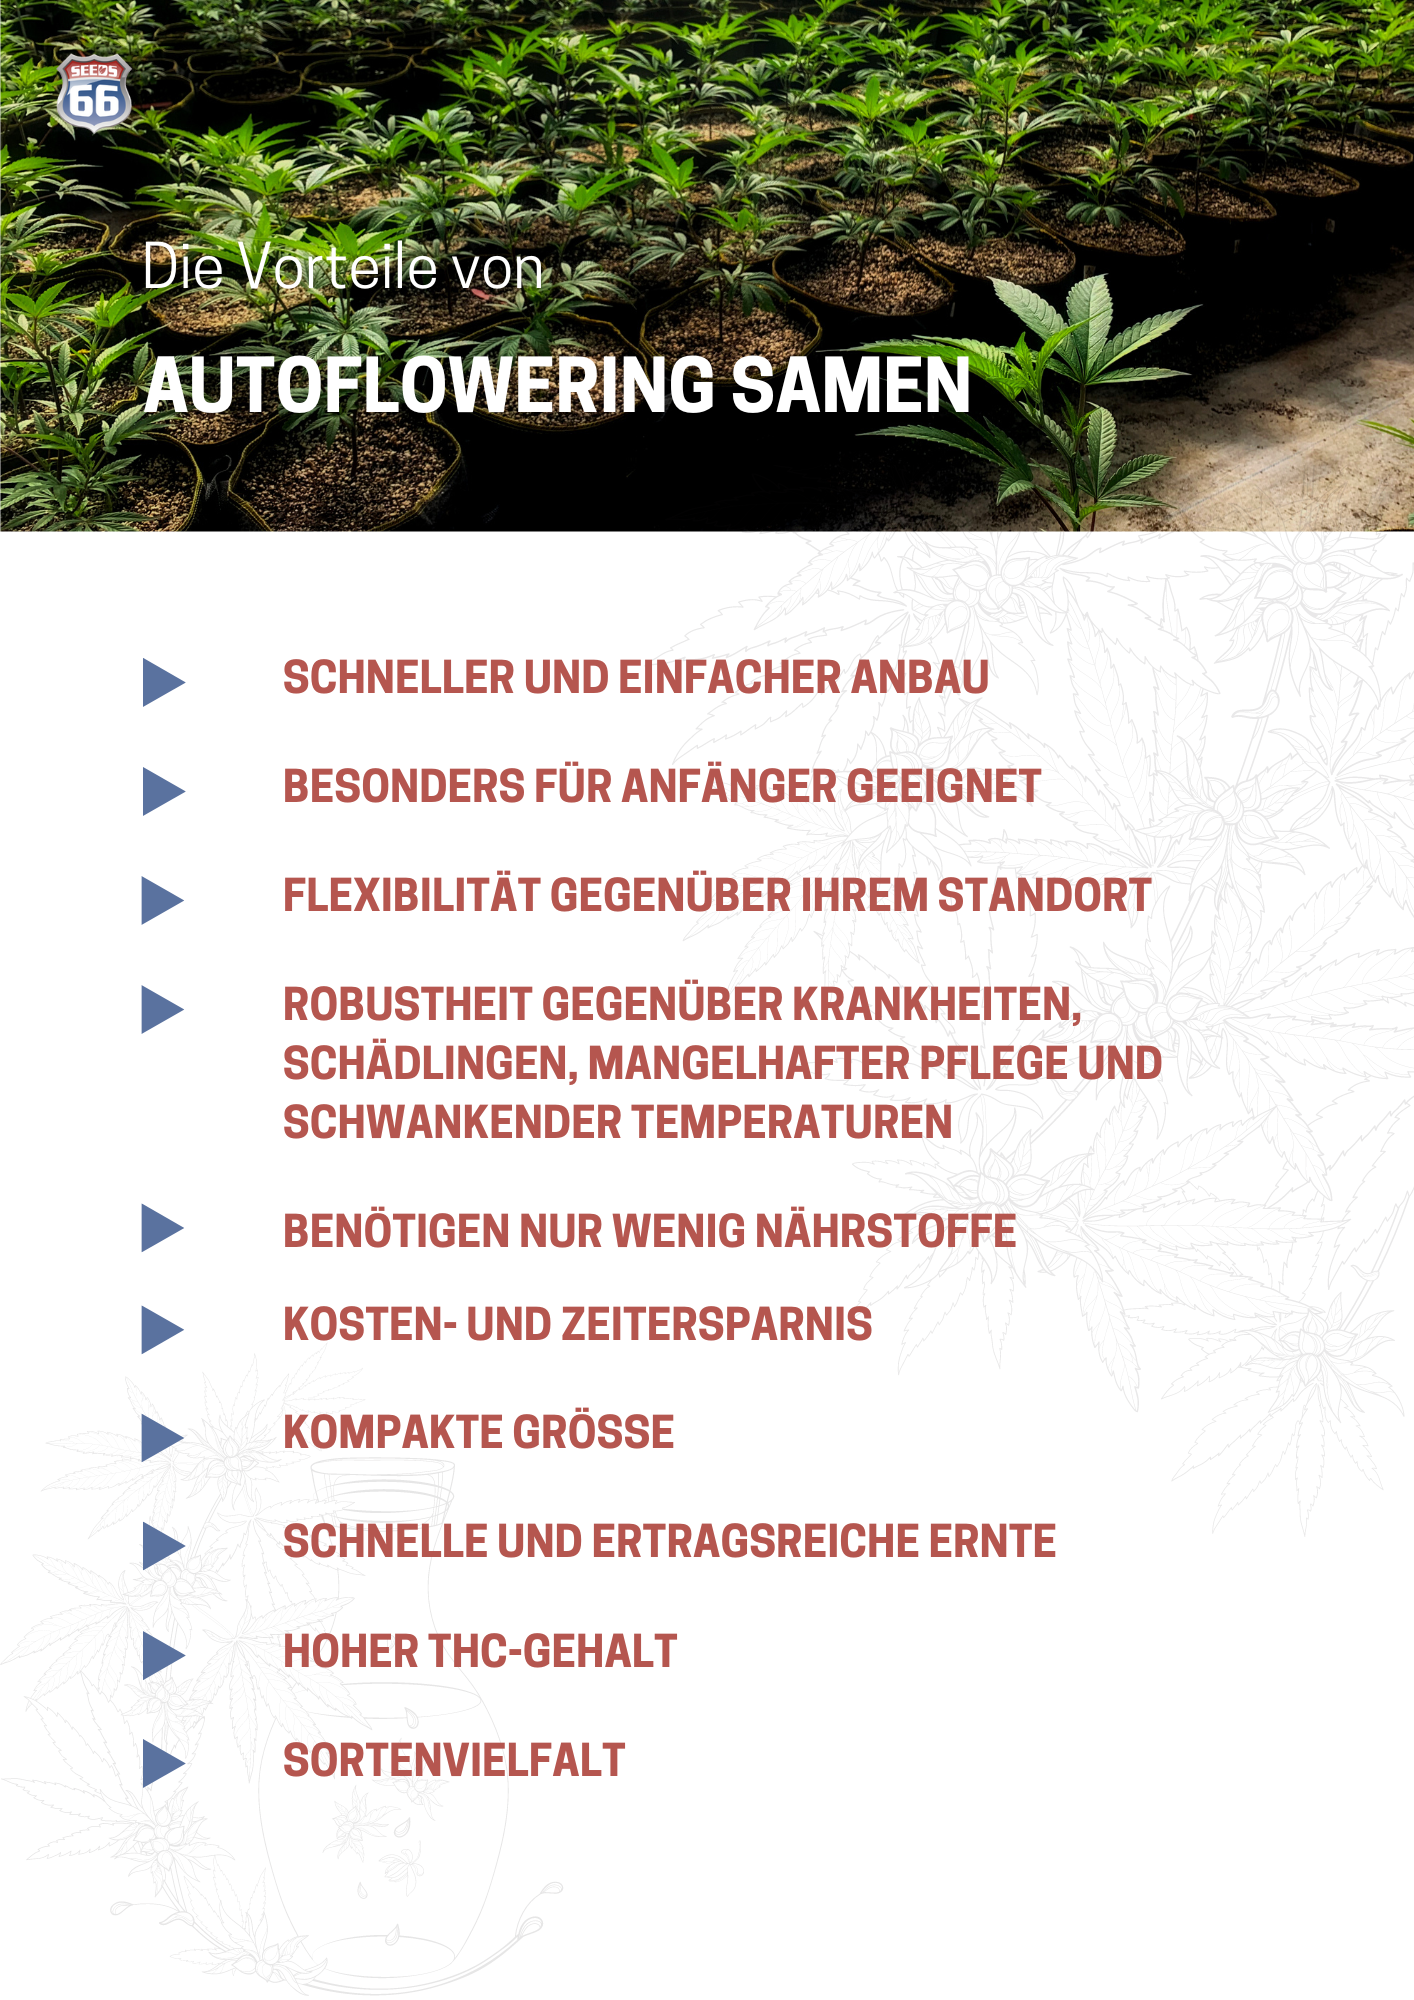 vorteile_autoflowering_indoor_samen_infografik